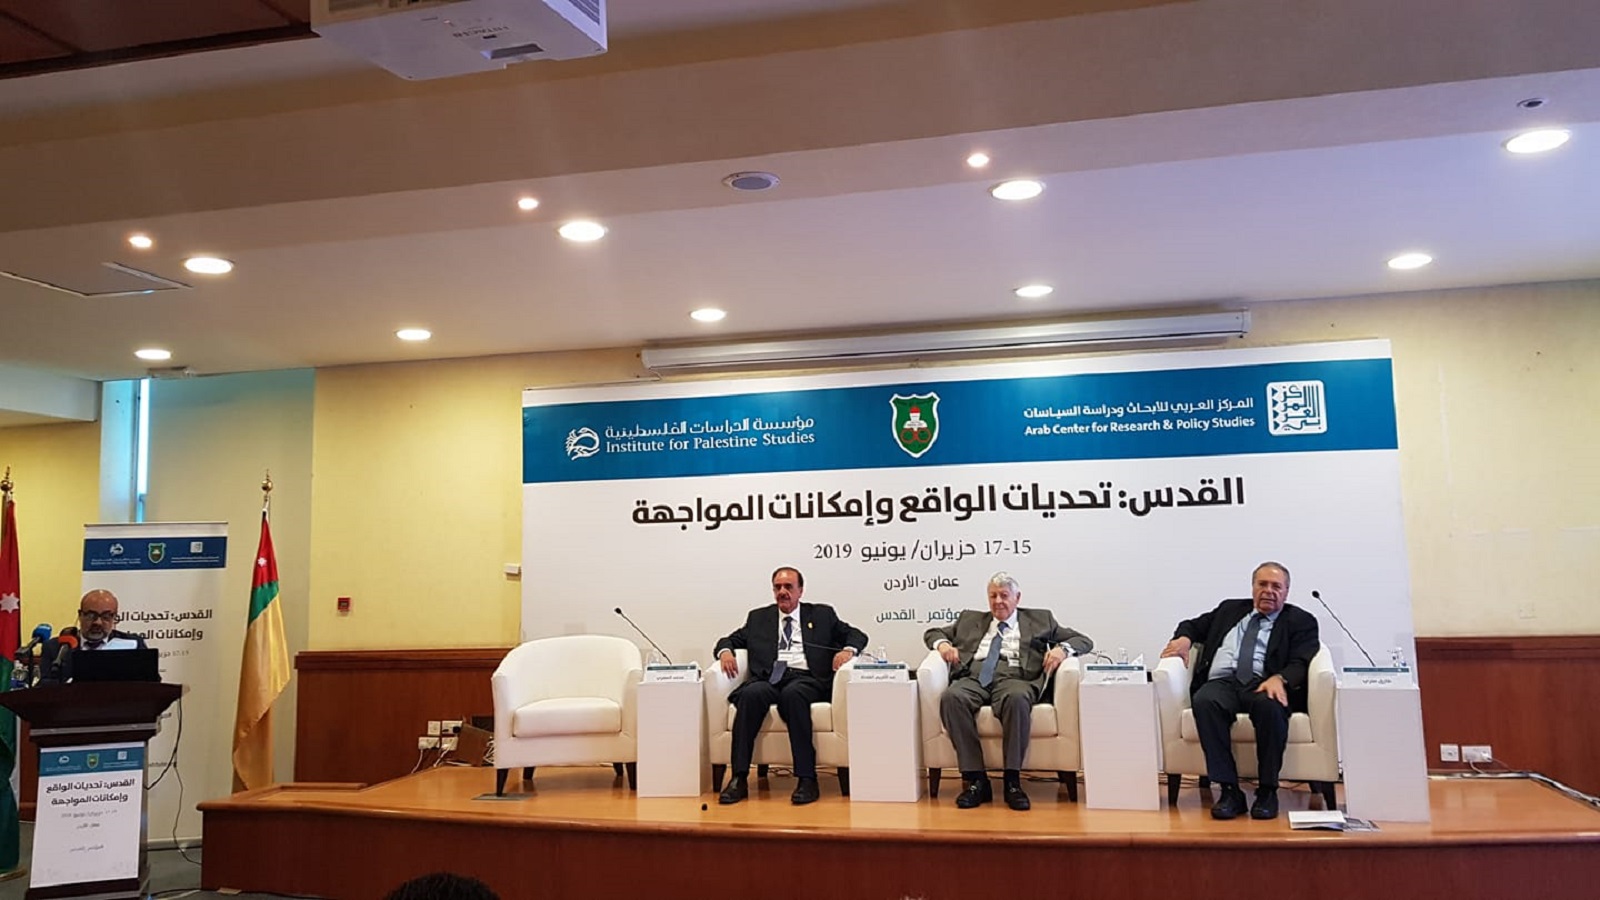 اختتام مؤتمر القدس في عمان:قداسة المكان وقدسية القضية